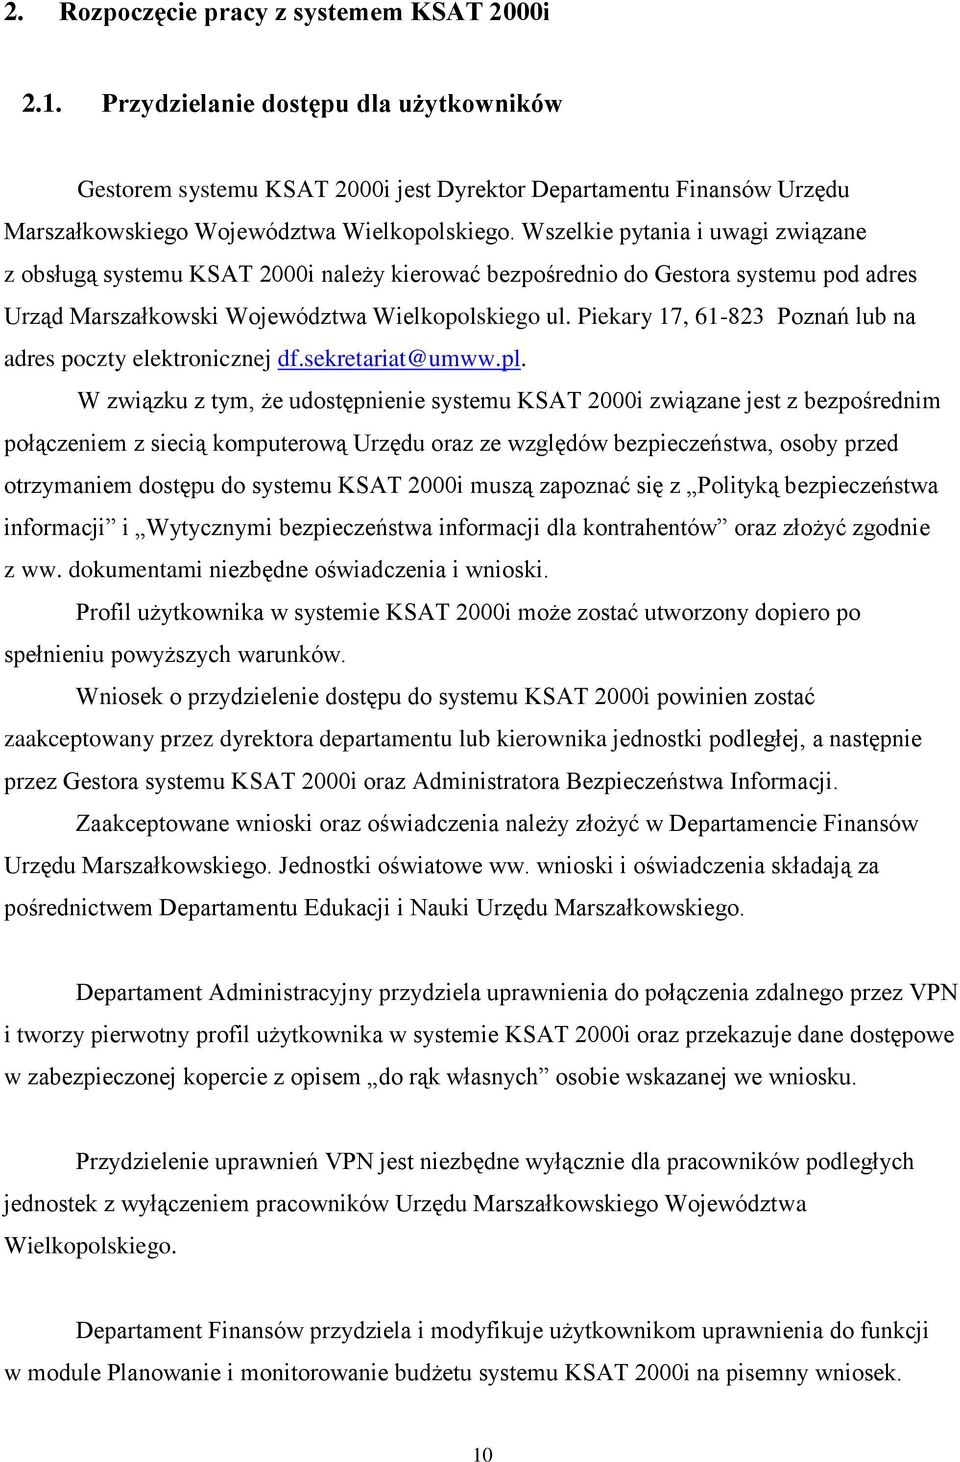 Wszelkie pytania i uwagi związane z obsługą systemu KSAT 2000i należy kierować bezpośrednio do Gestora systemu pod adres Urząd Marszałkowski Województwa Wielkopolskiego ul.